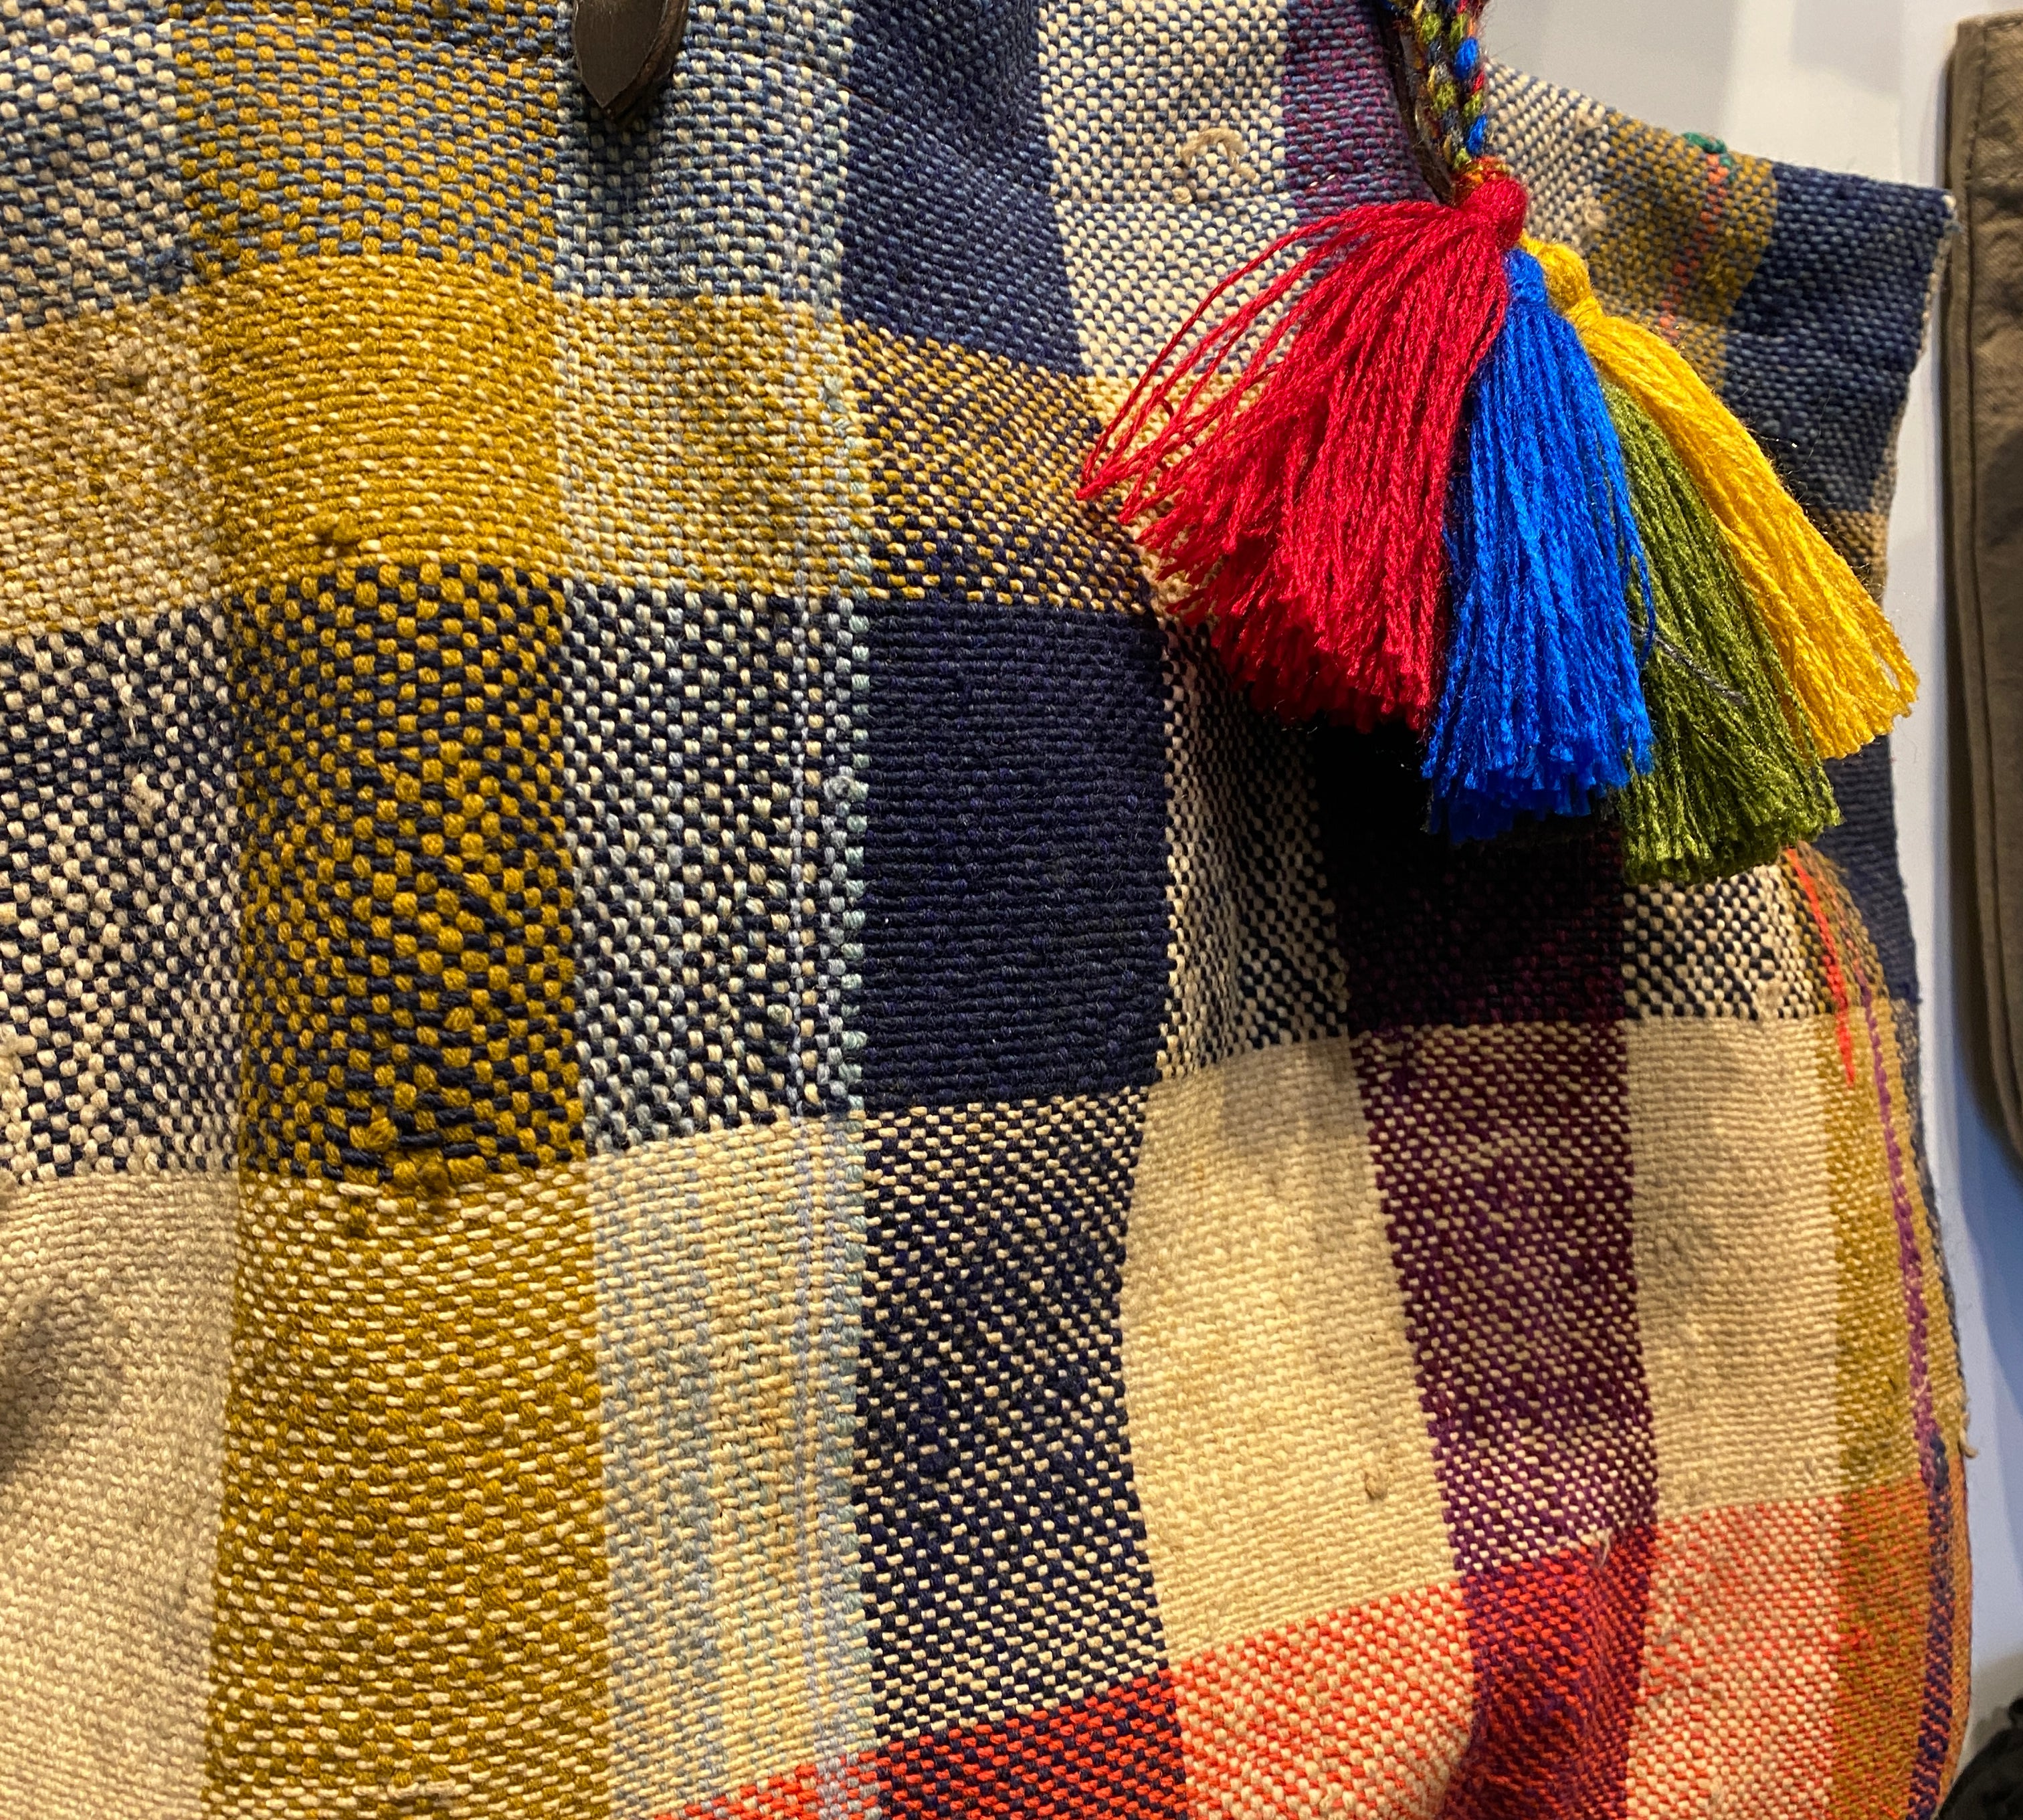 Die HAIK Berber Taschen von LABEL17 werden aus alten Beständen von Decken gefertigt und verfügen über Handgriffe aus Leder.